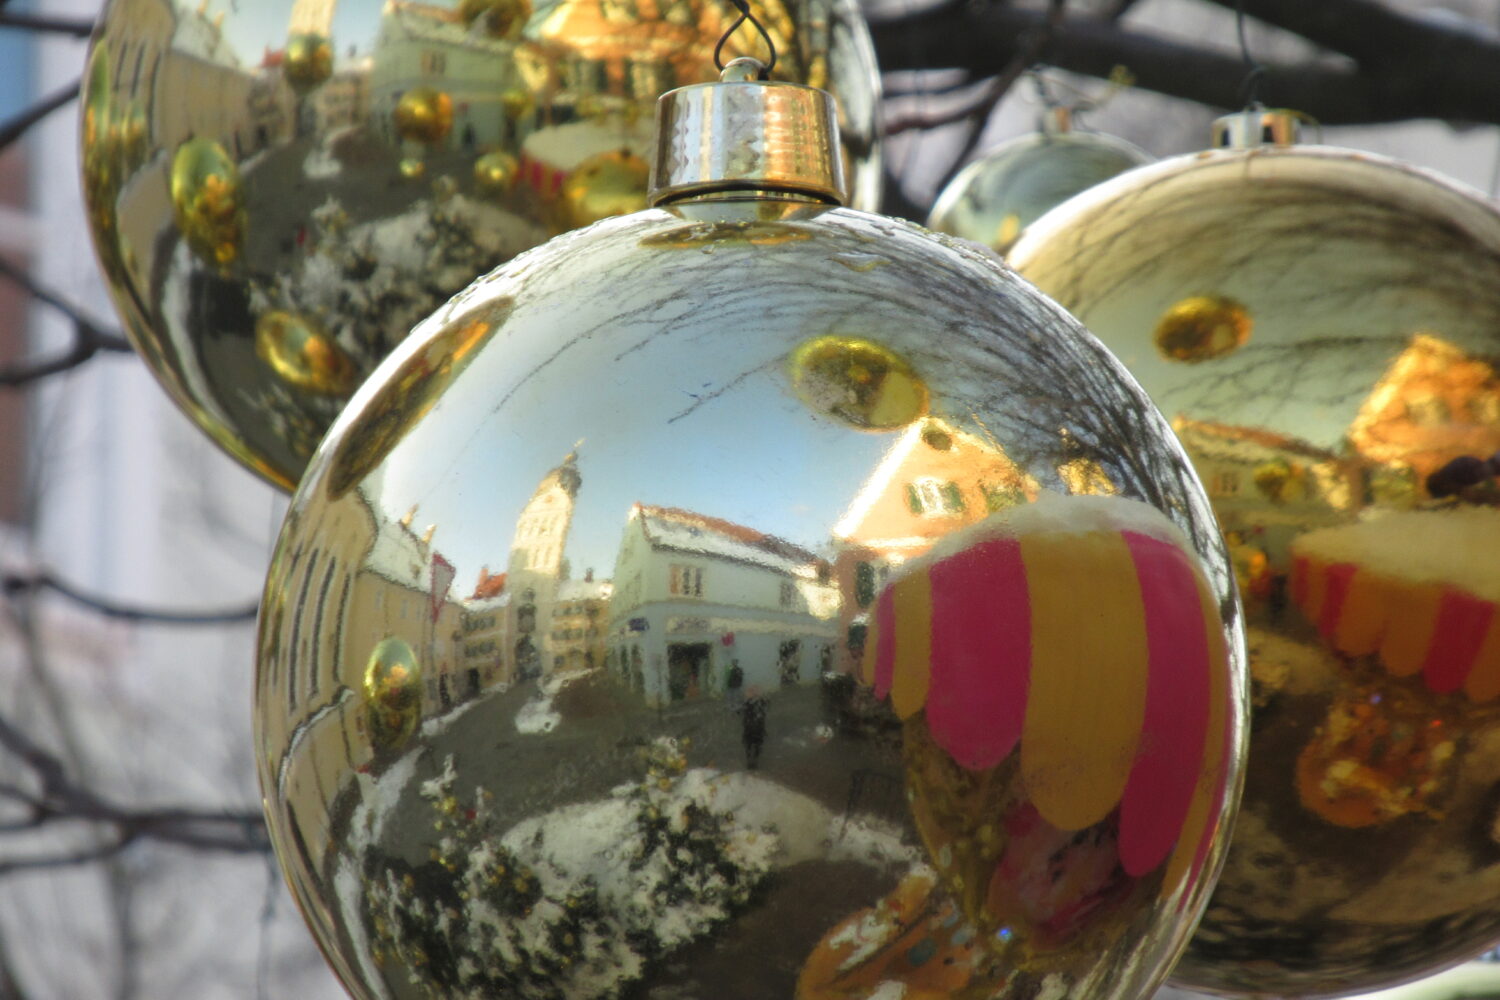 ©Anja Baumann, Spiegelung Innenstadt Erding in Weihnachtskugel
